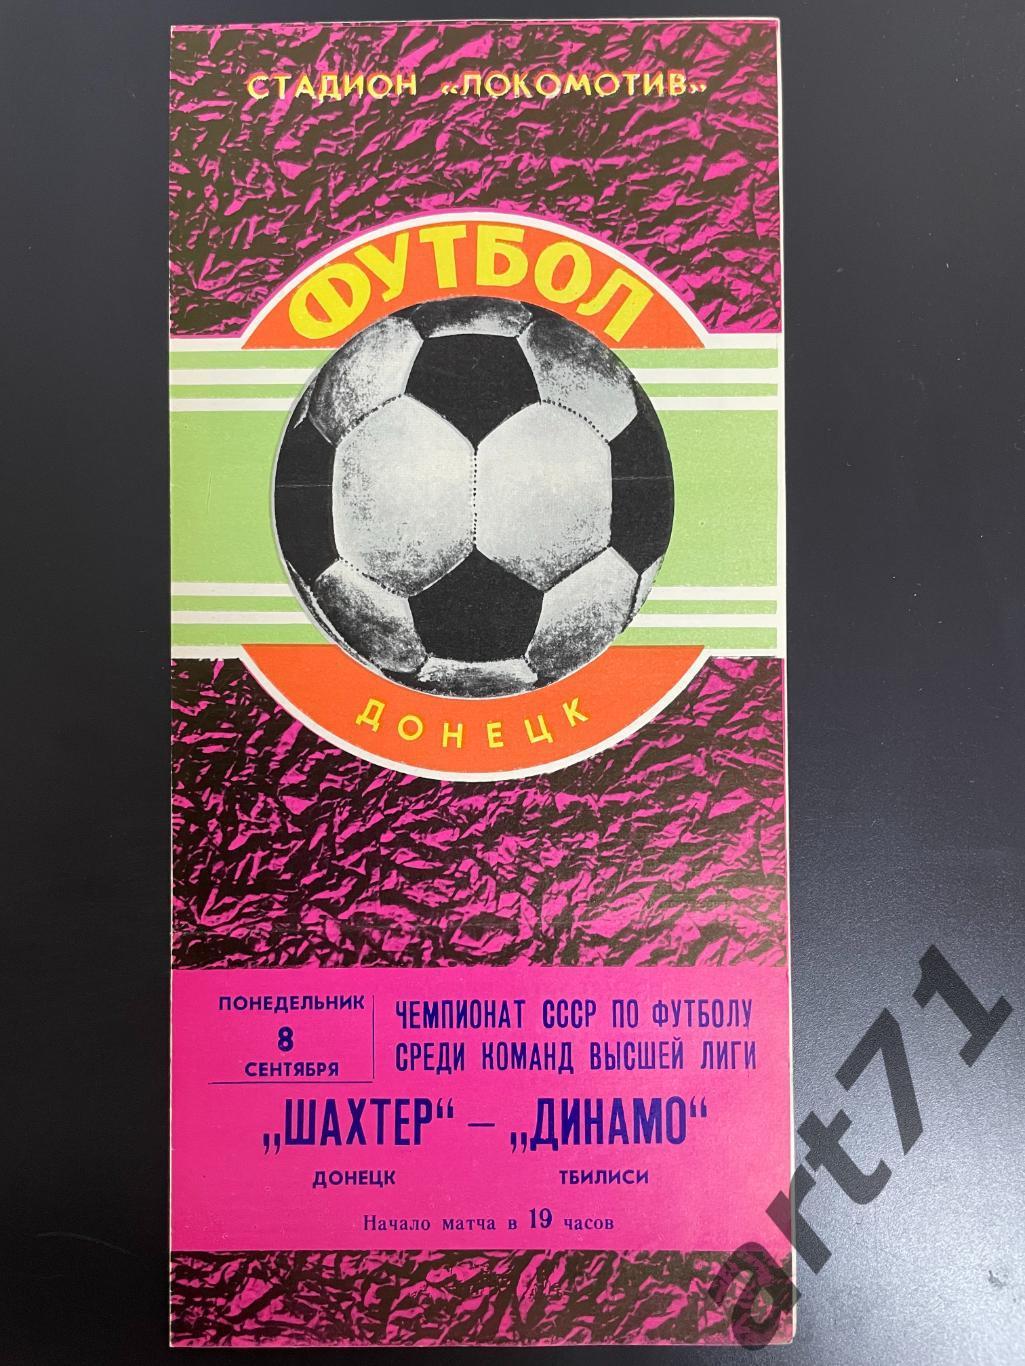 Шахтер Донецк - Динамо Тбилиси 1980